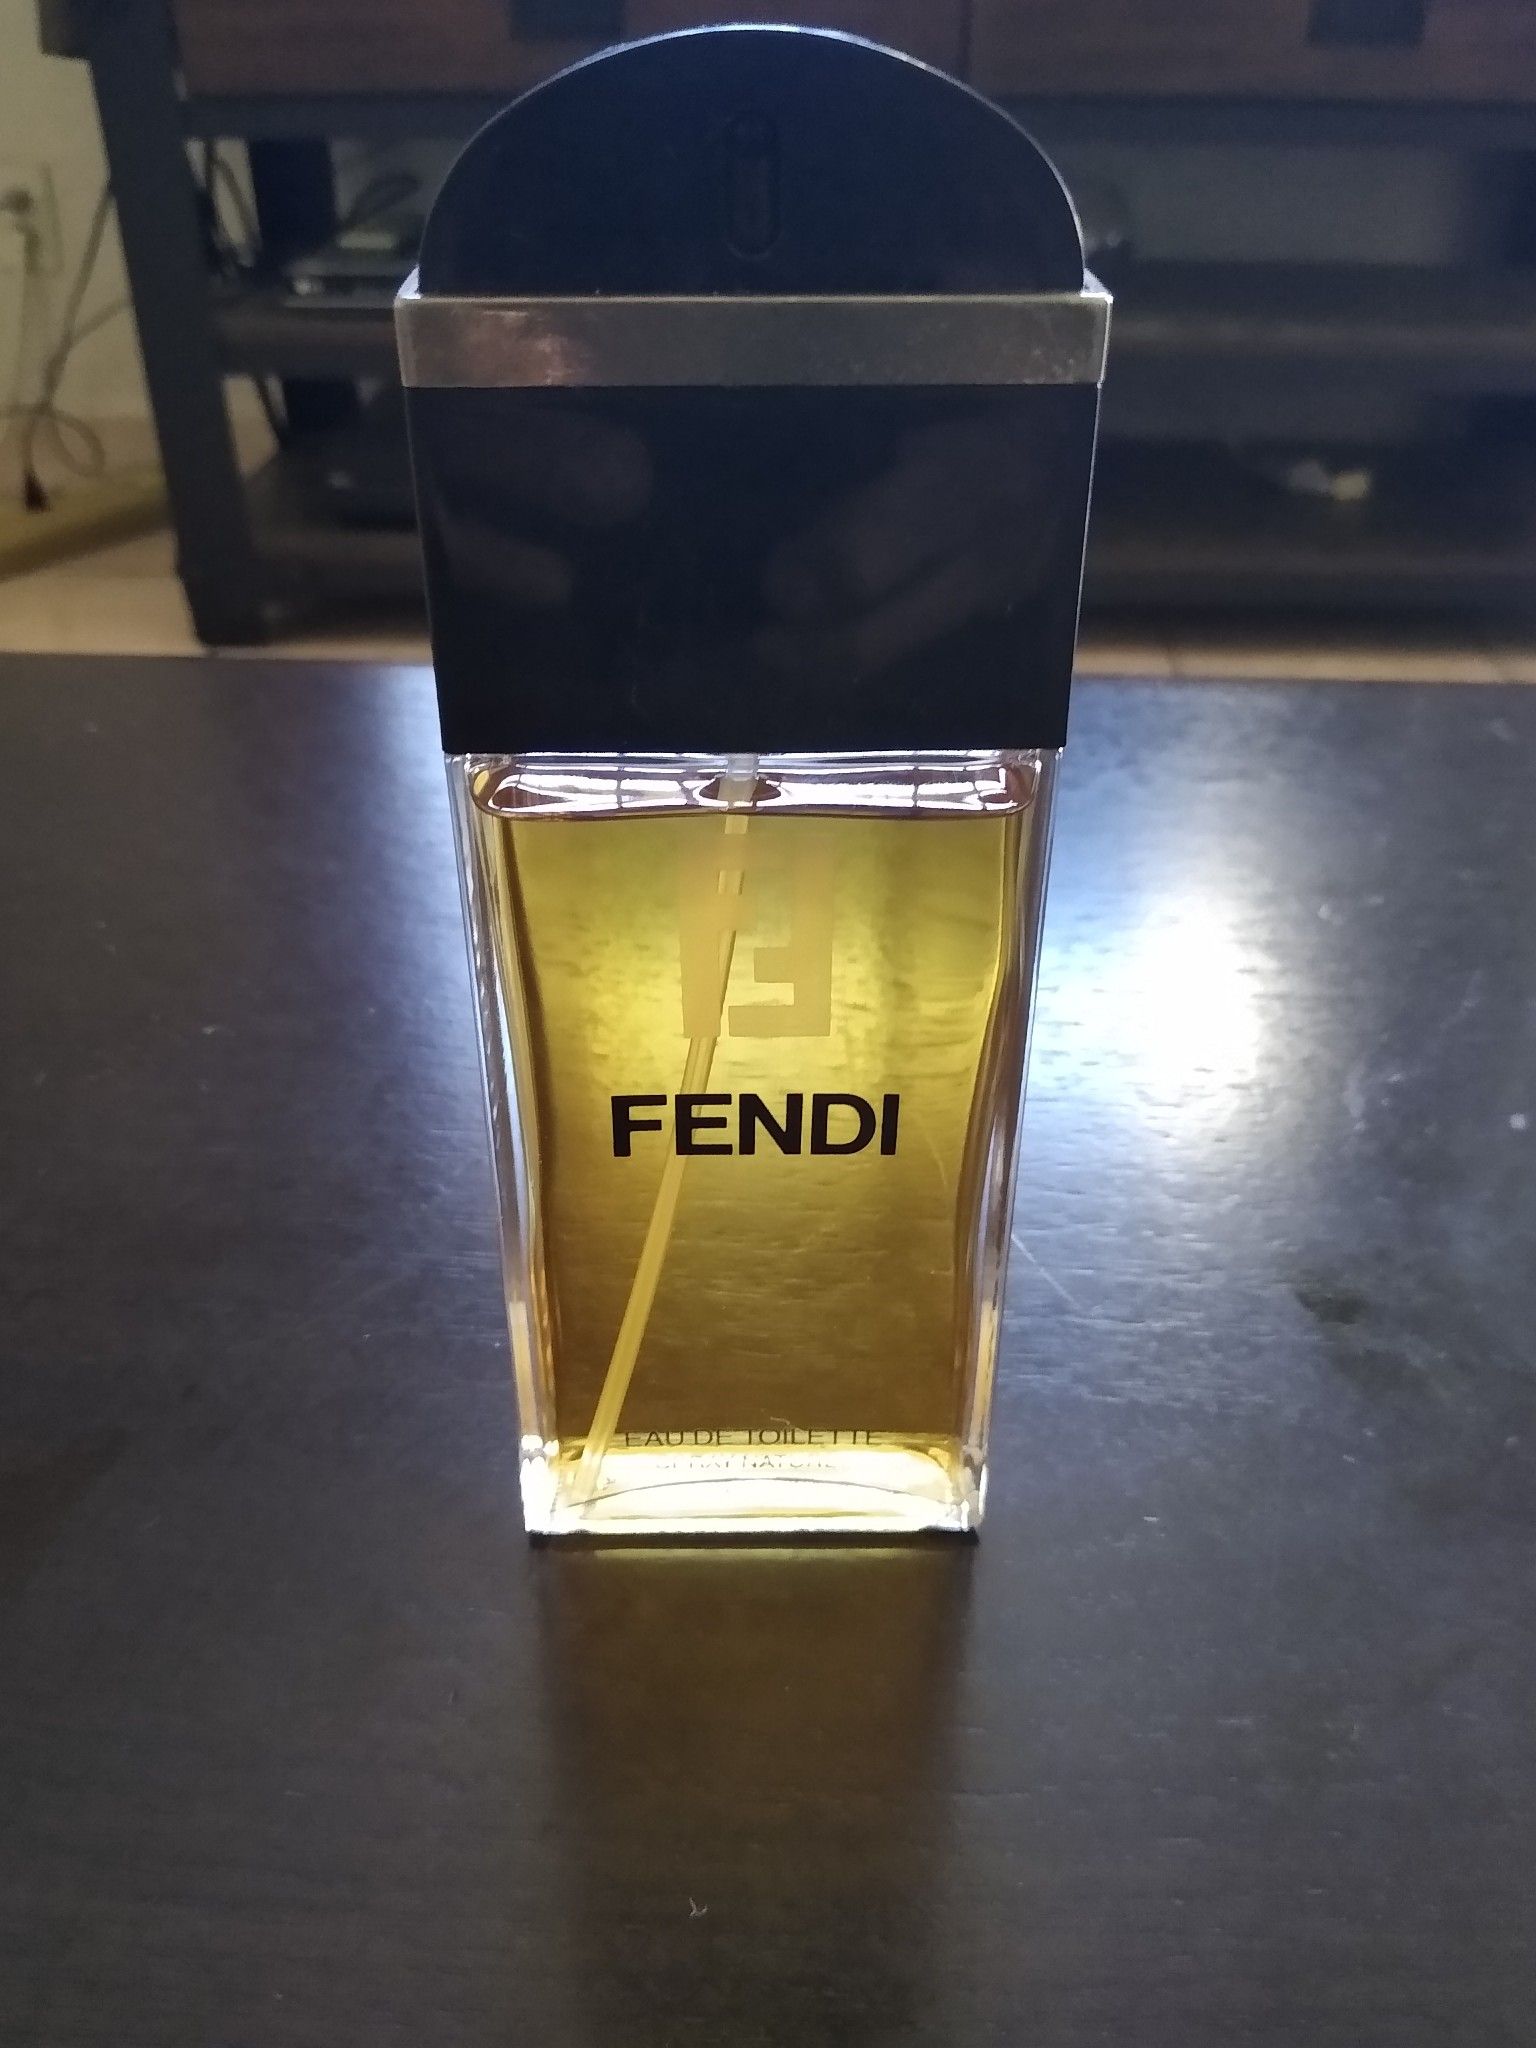 Fendi perfume